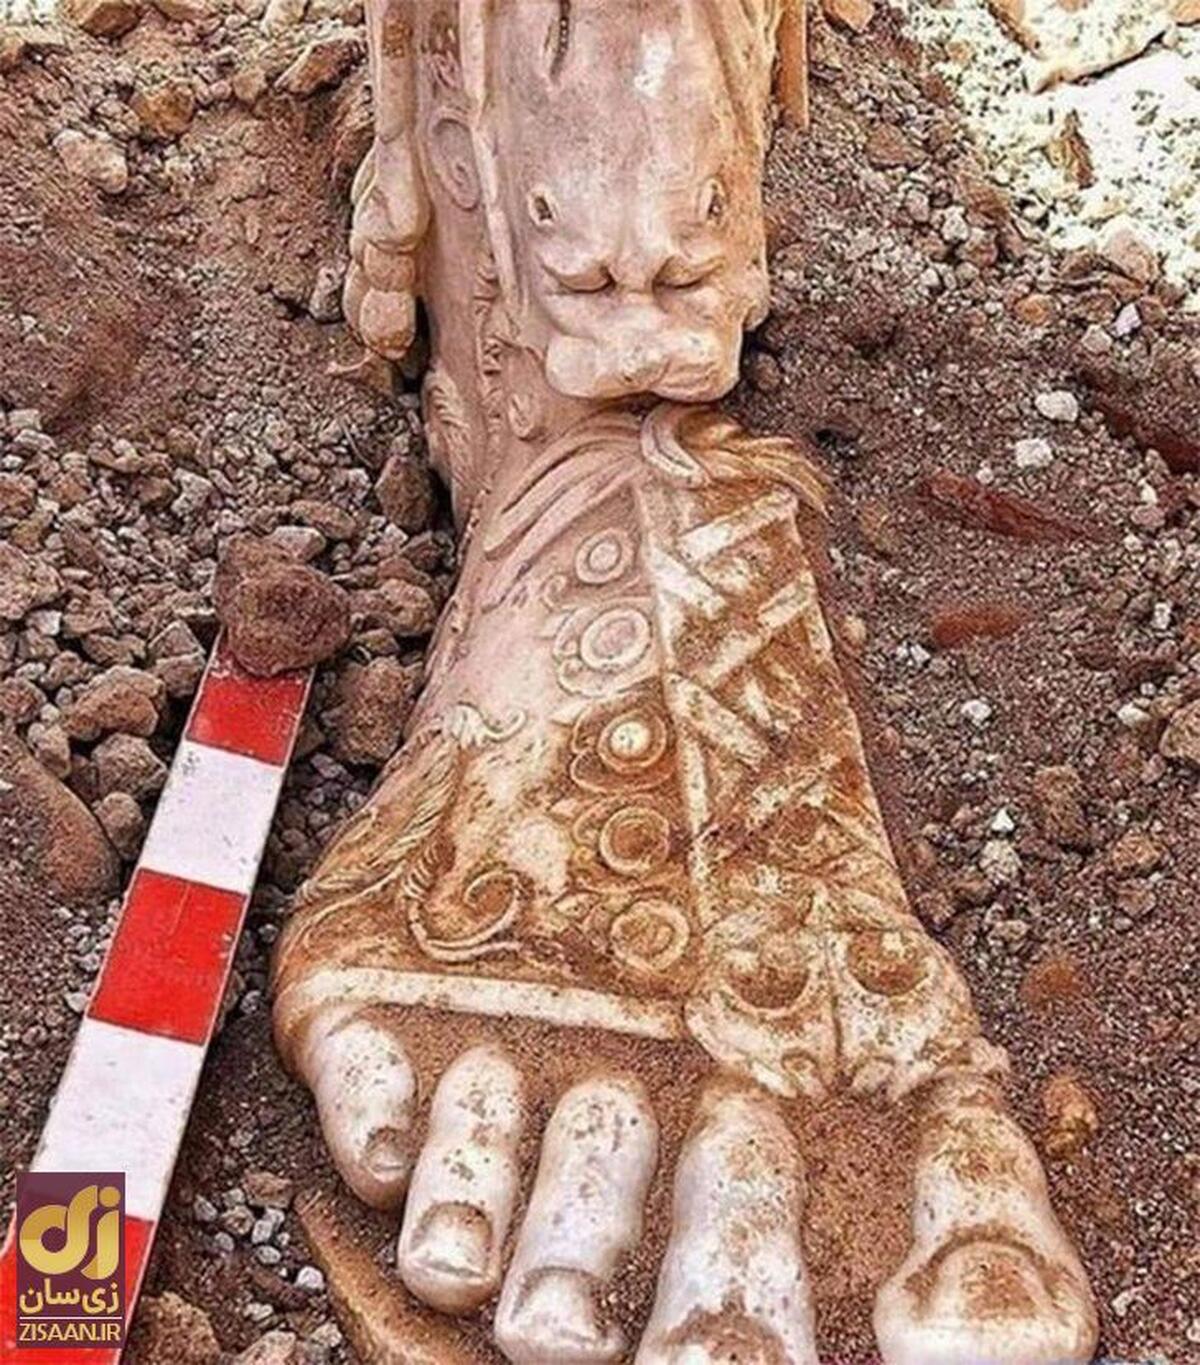 تصویری وحشتناک از کشف مجسمه مارکوس اورلیوس در ترکیه